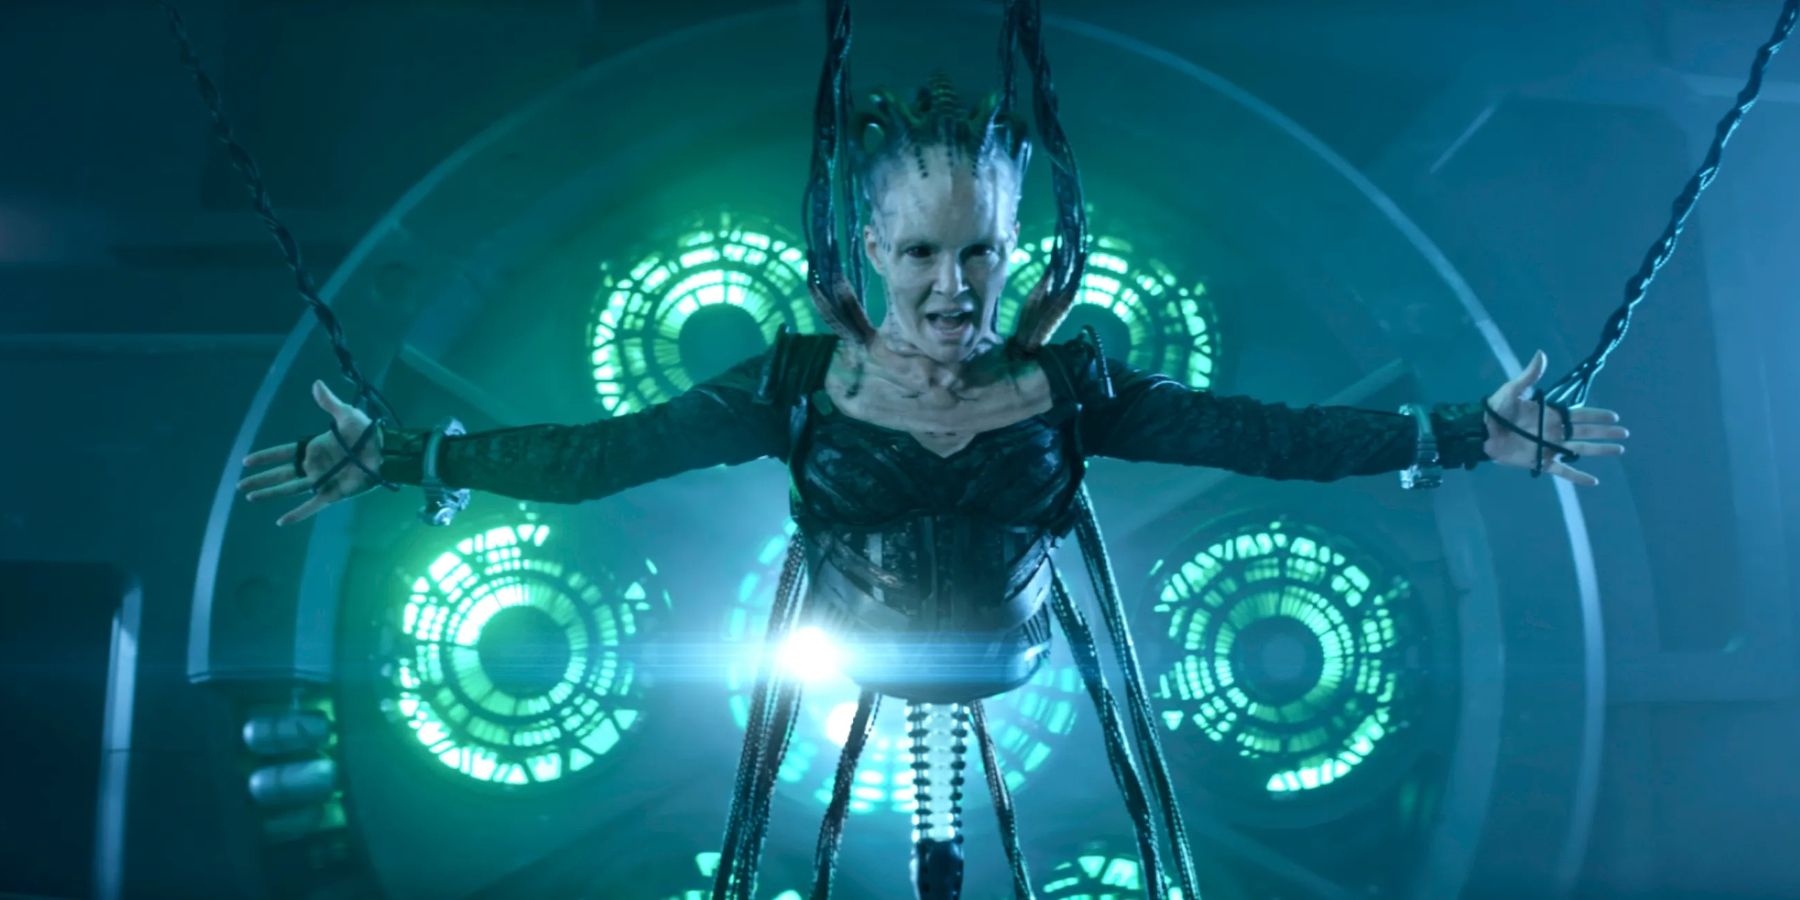 The Borg Queen